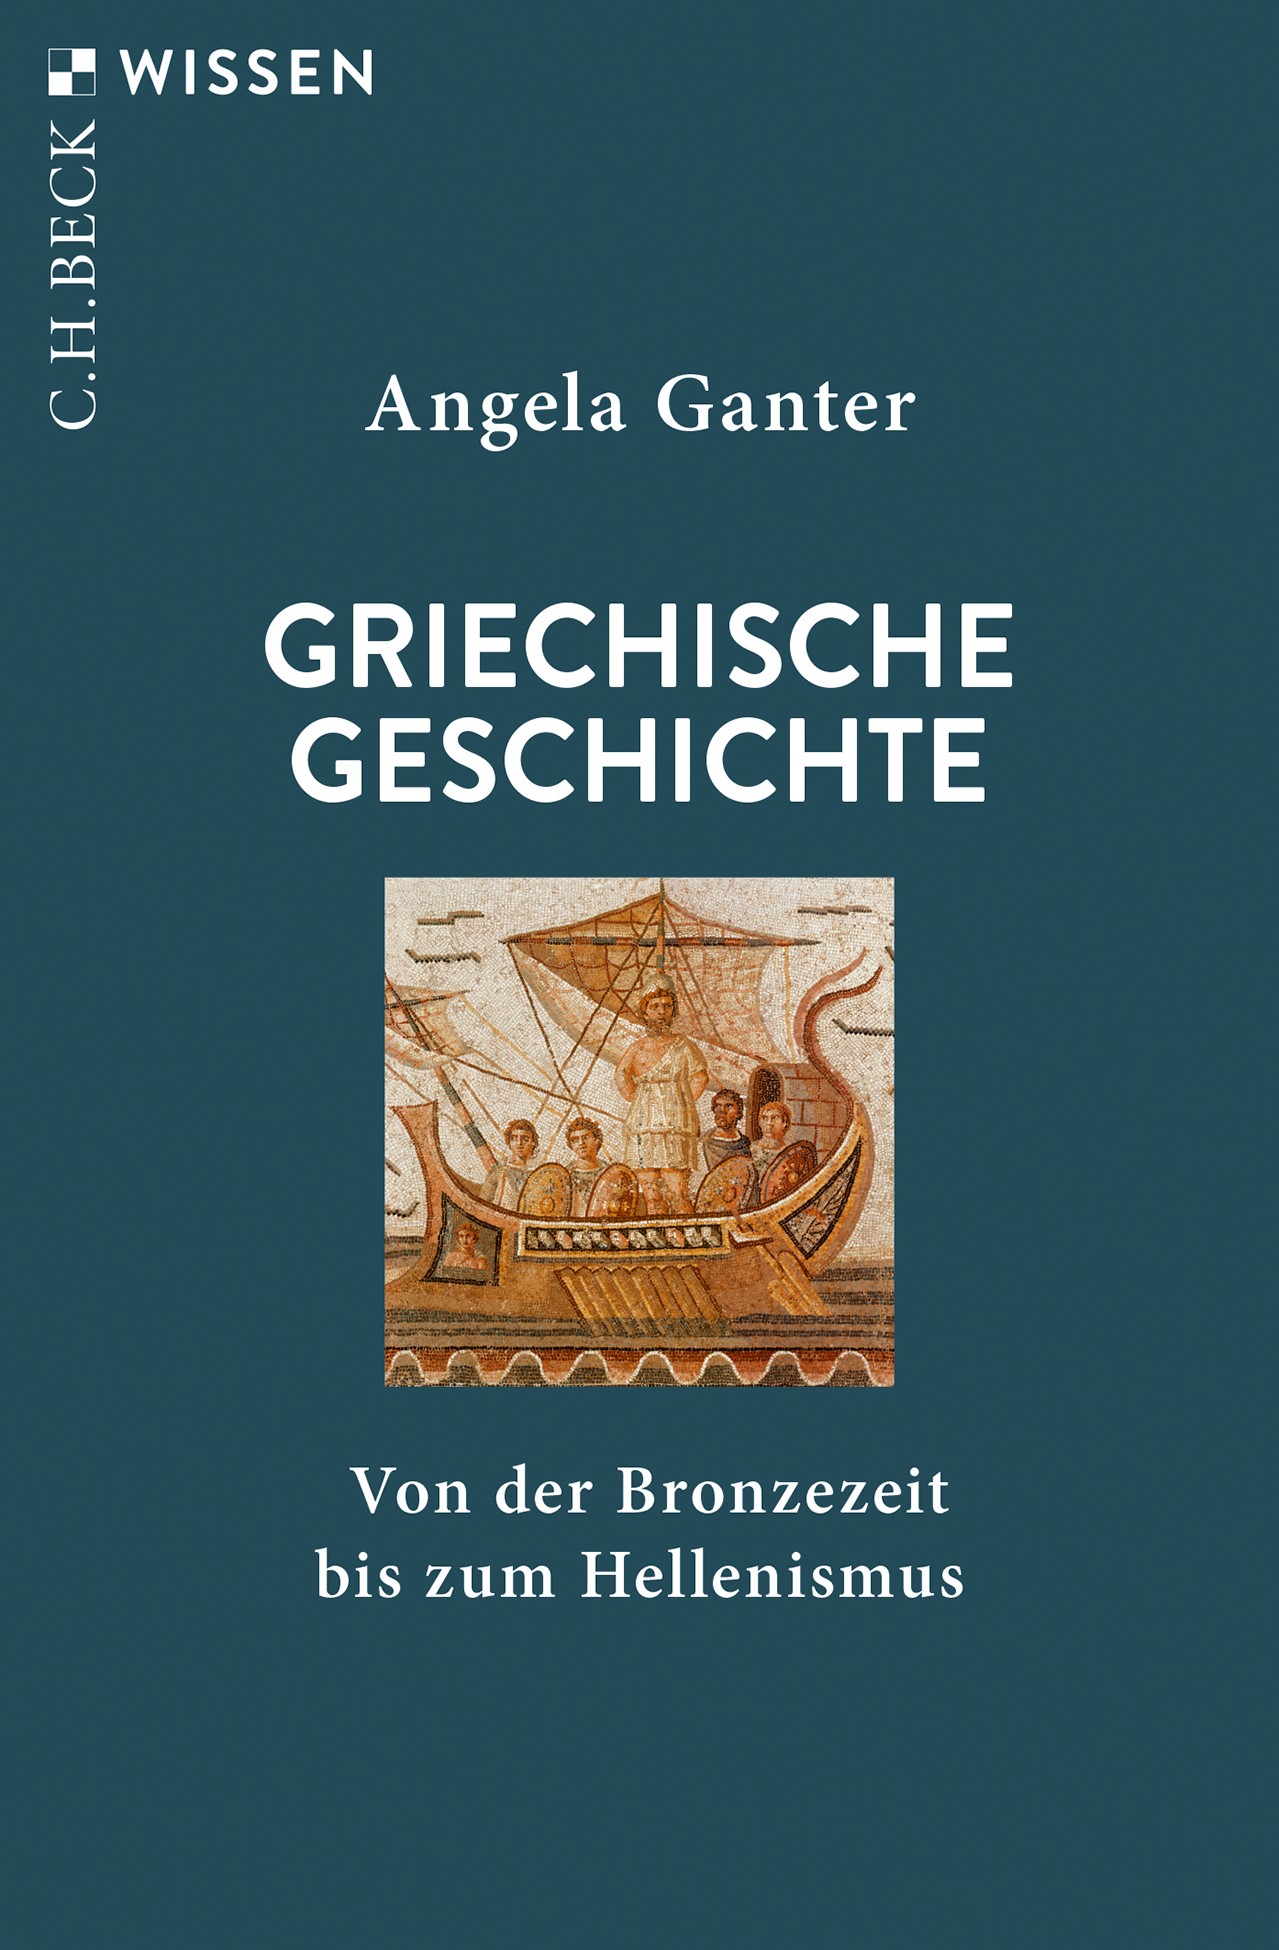 Cover: Ganter, Angela, Griechische Geschichte